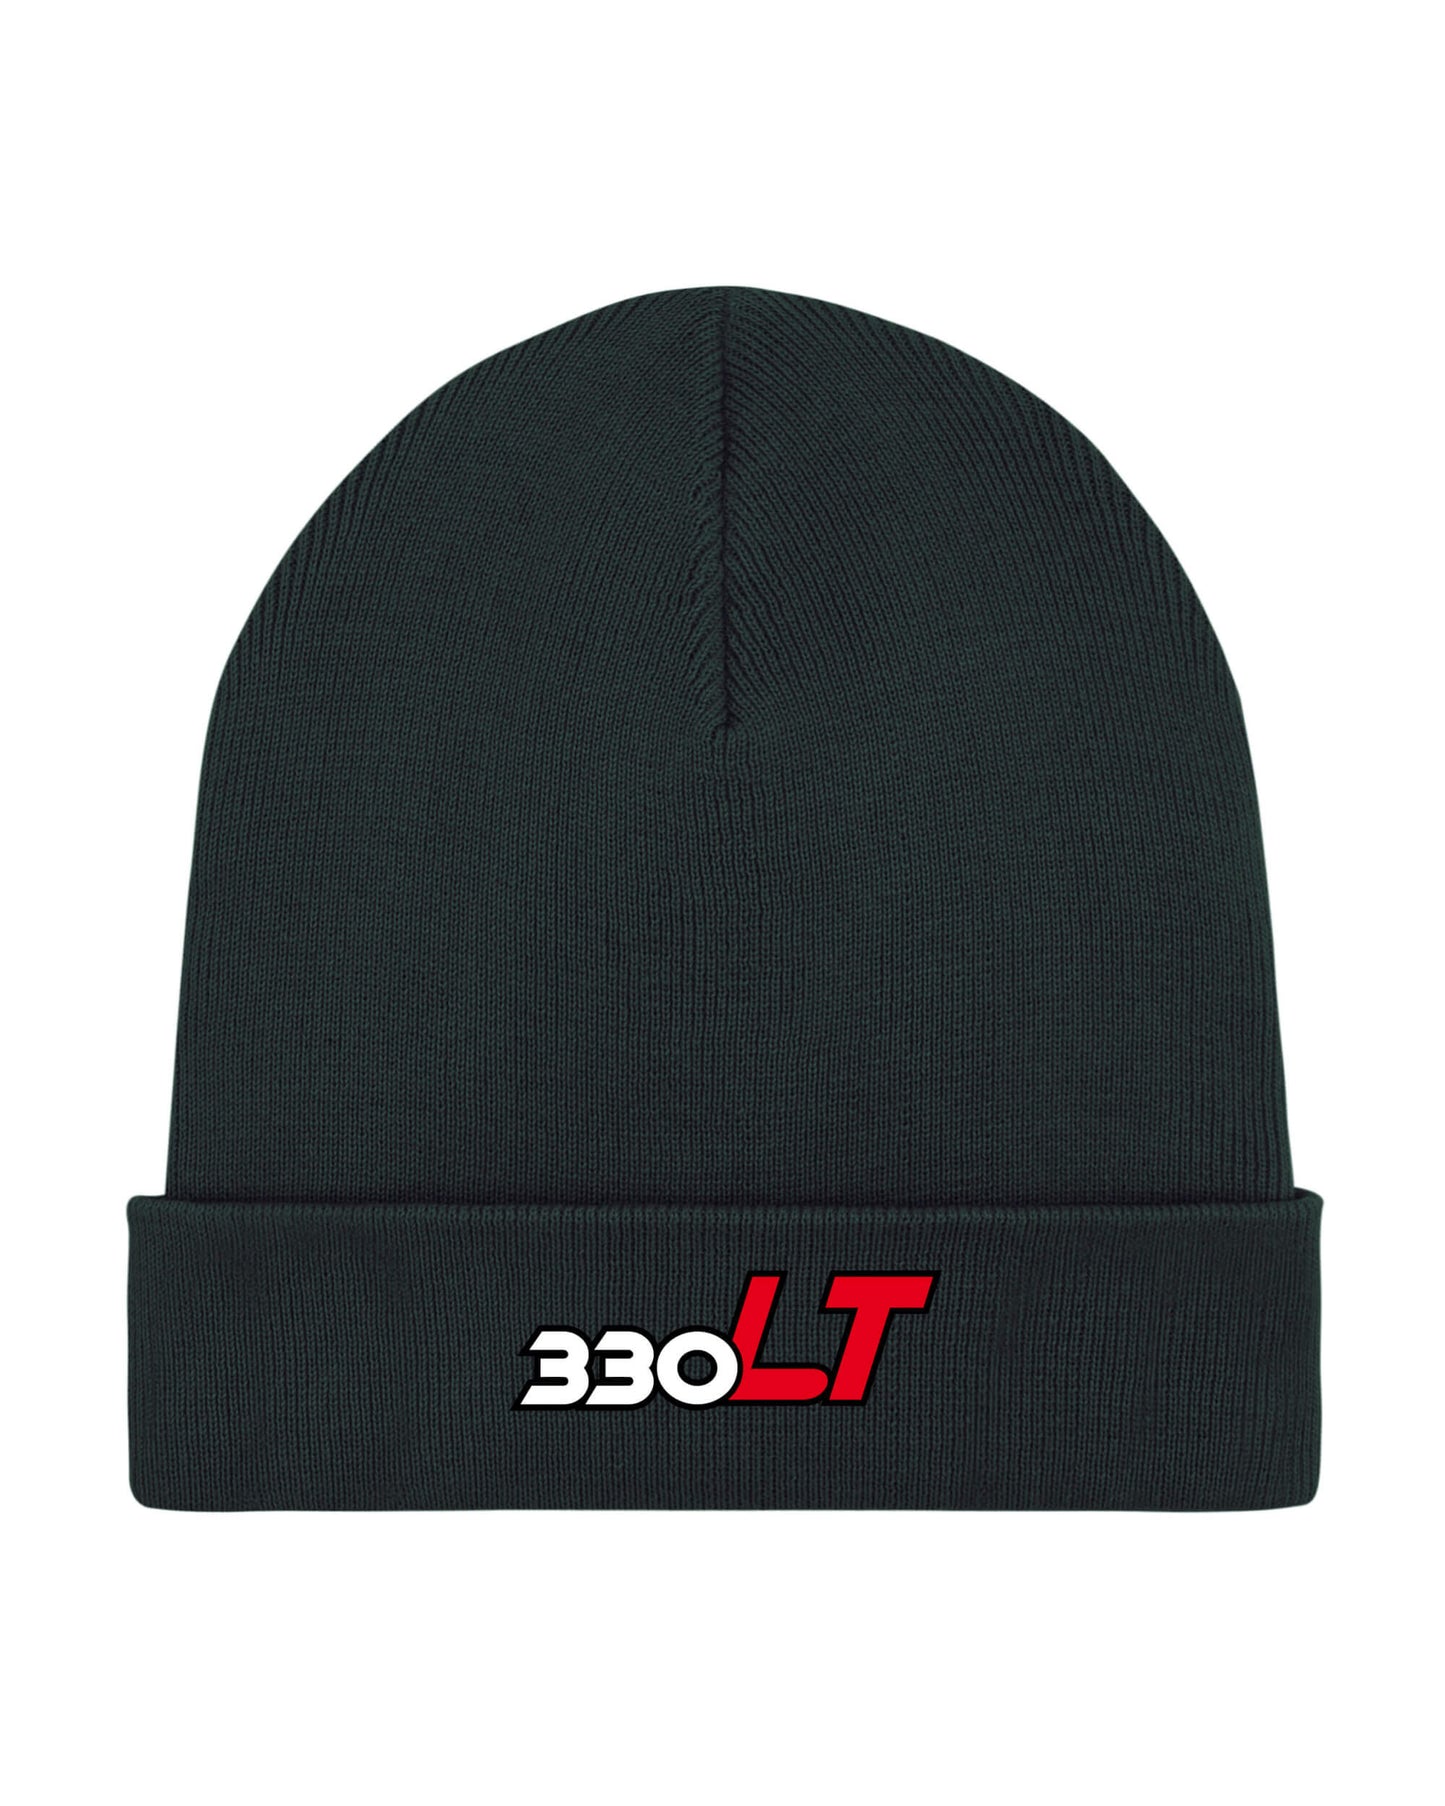 Produktbild der schwarzen Strick-Mütze vor weißem Hintergrund. Dargestellt wird das Extra 330 LT Typ-Logo.